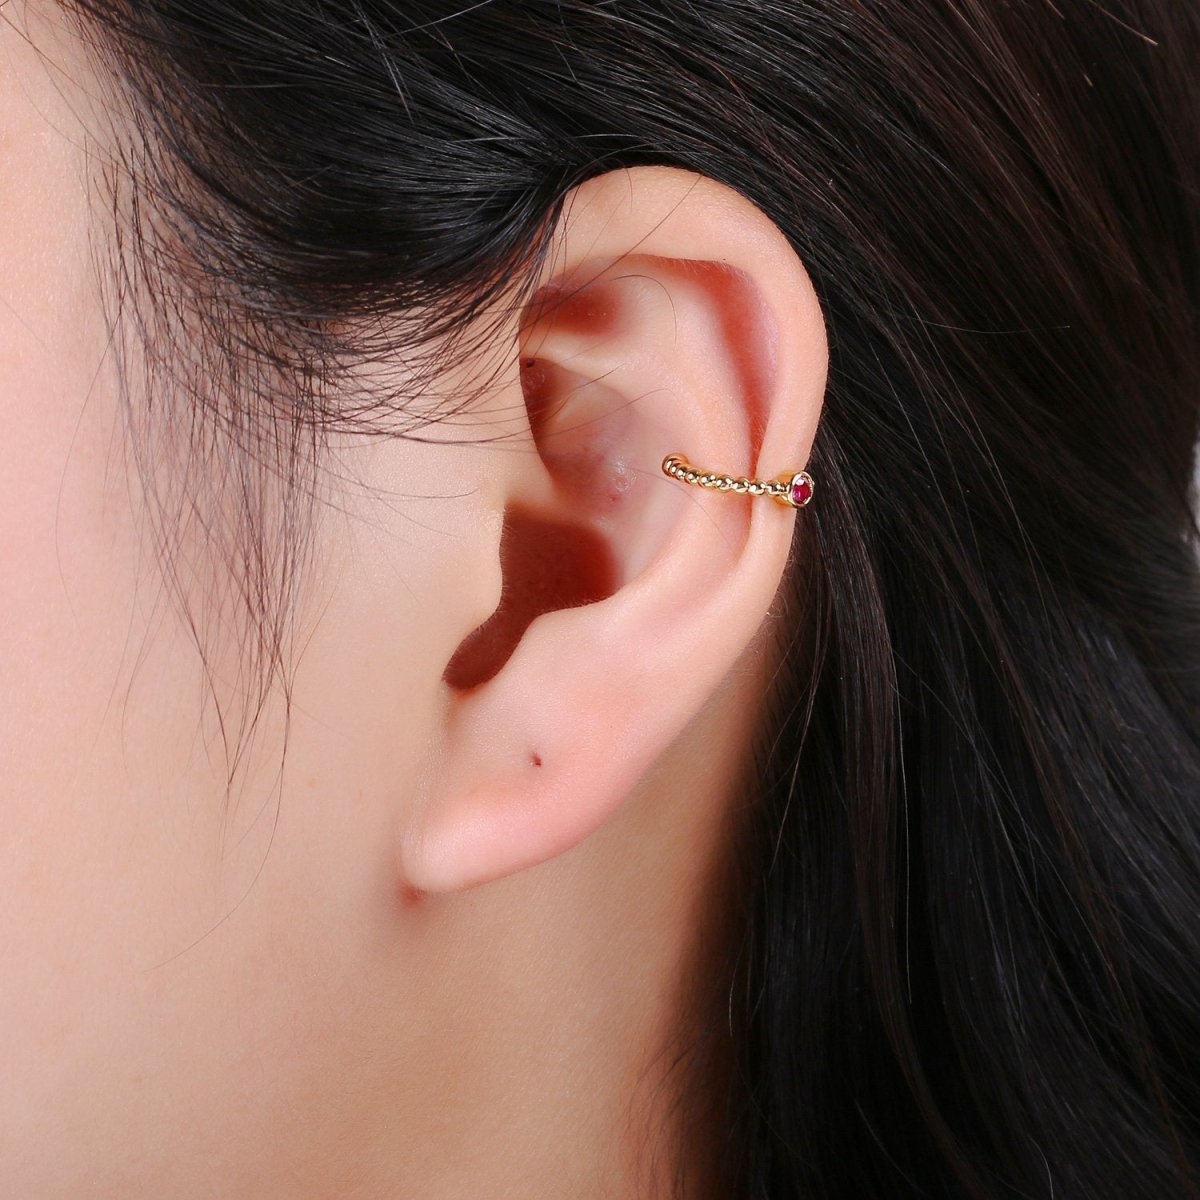 1x Ear Cuff No Piercing • Gold Filled ear cuff • conch cuff • ear cuff non pierced • fake helix piercing • ear cuffs • cartilage cuff, 1xAI-130 - DLUXCA